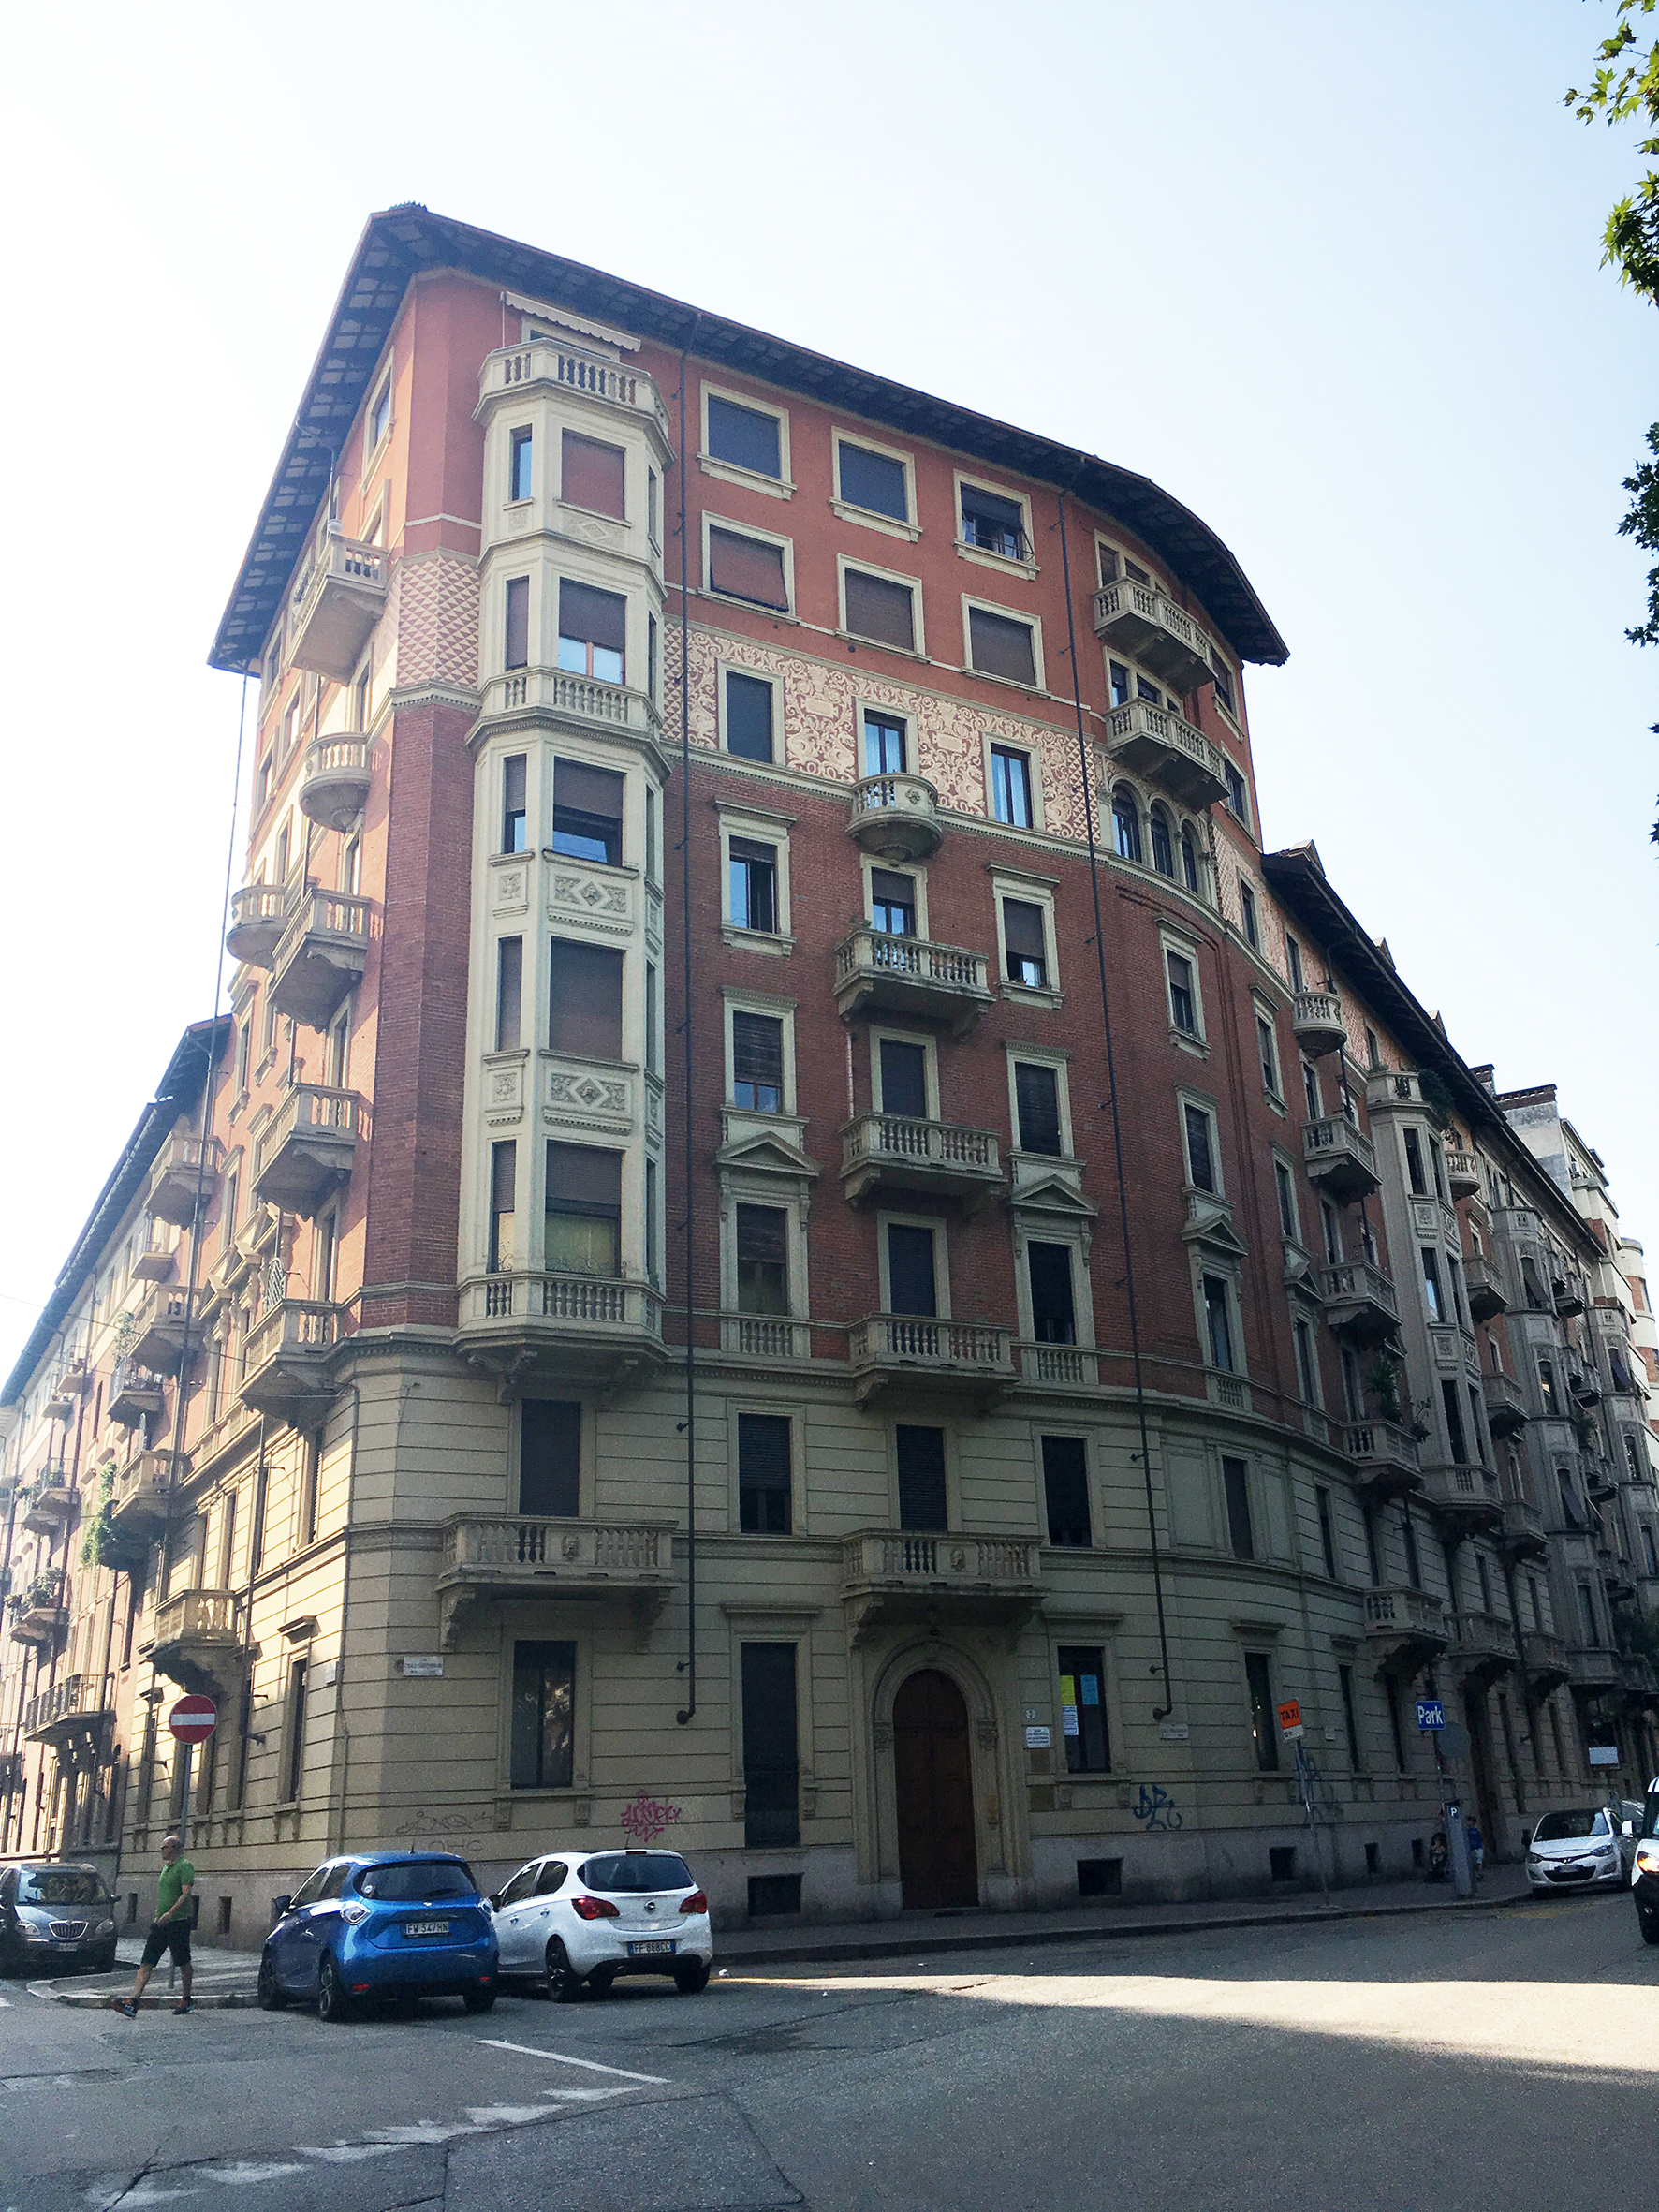 [Casa d' abitazione civile in Corso Tassoni, 32] (casa) - Torino (TO) 